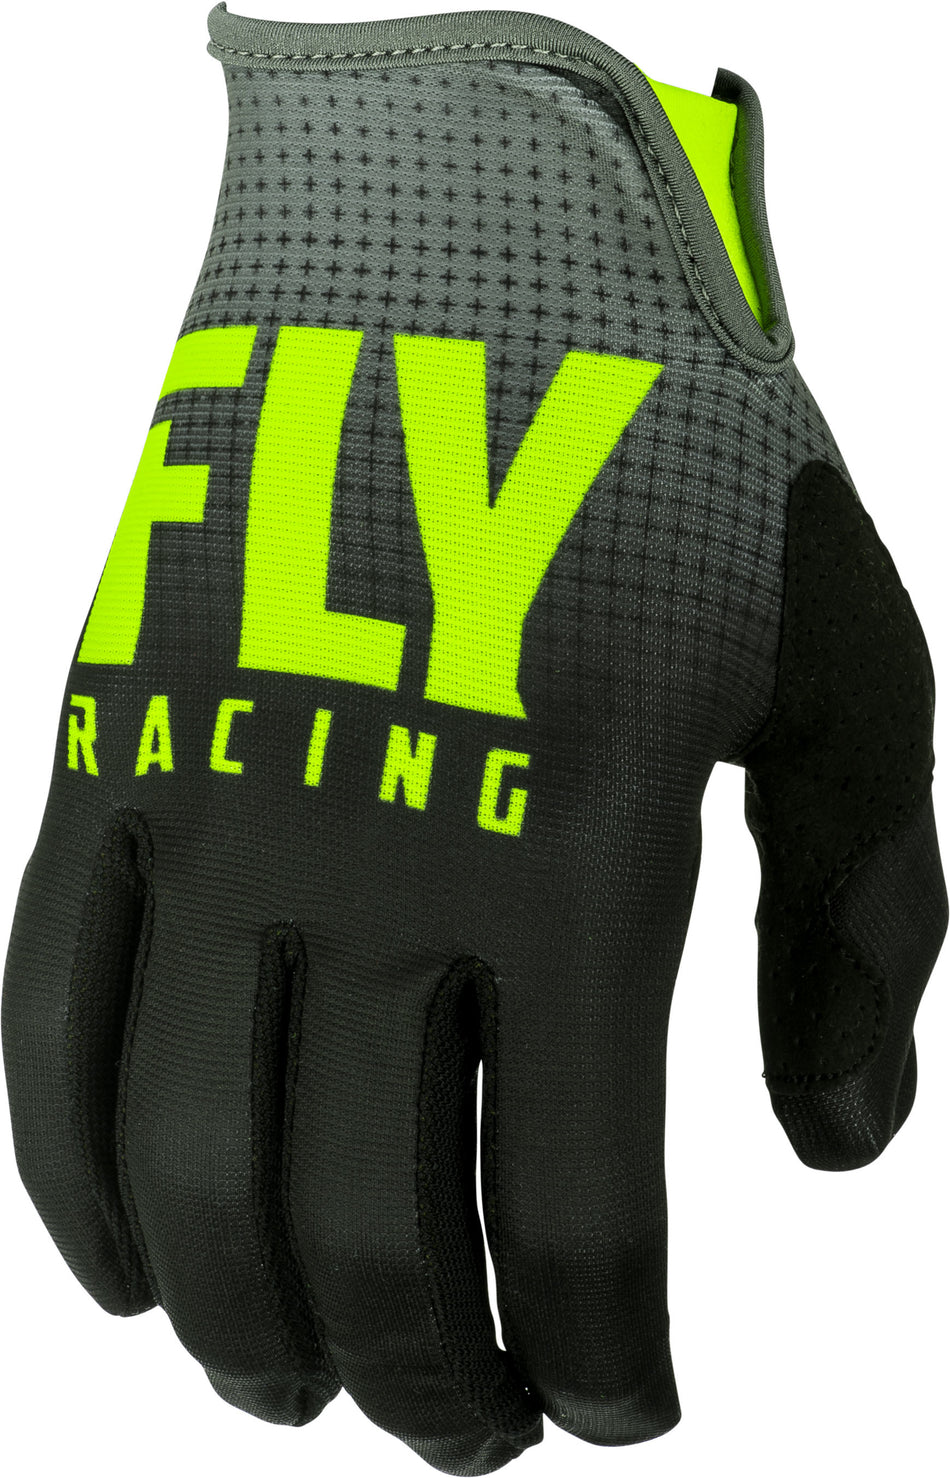 FLY RACING Lite Gloves Black/Hi-Vis Sz 05 372-01005